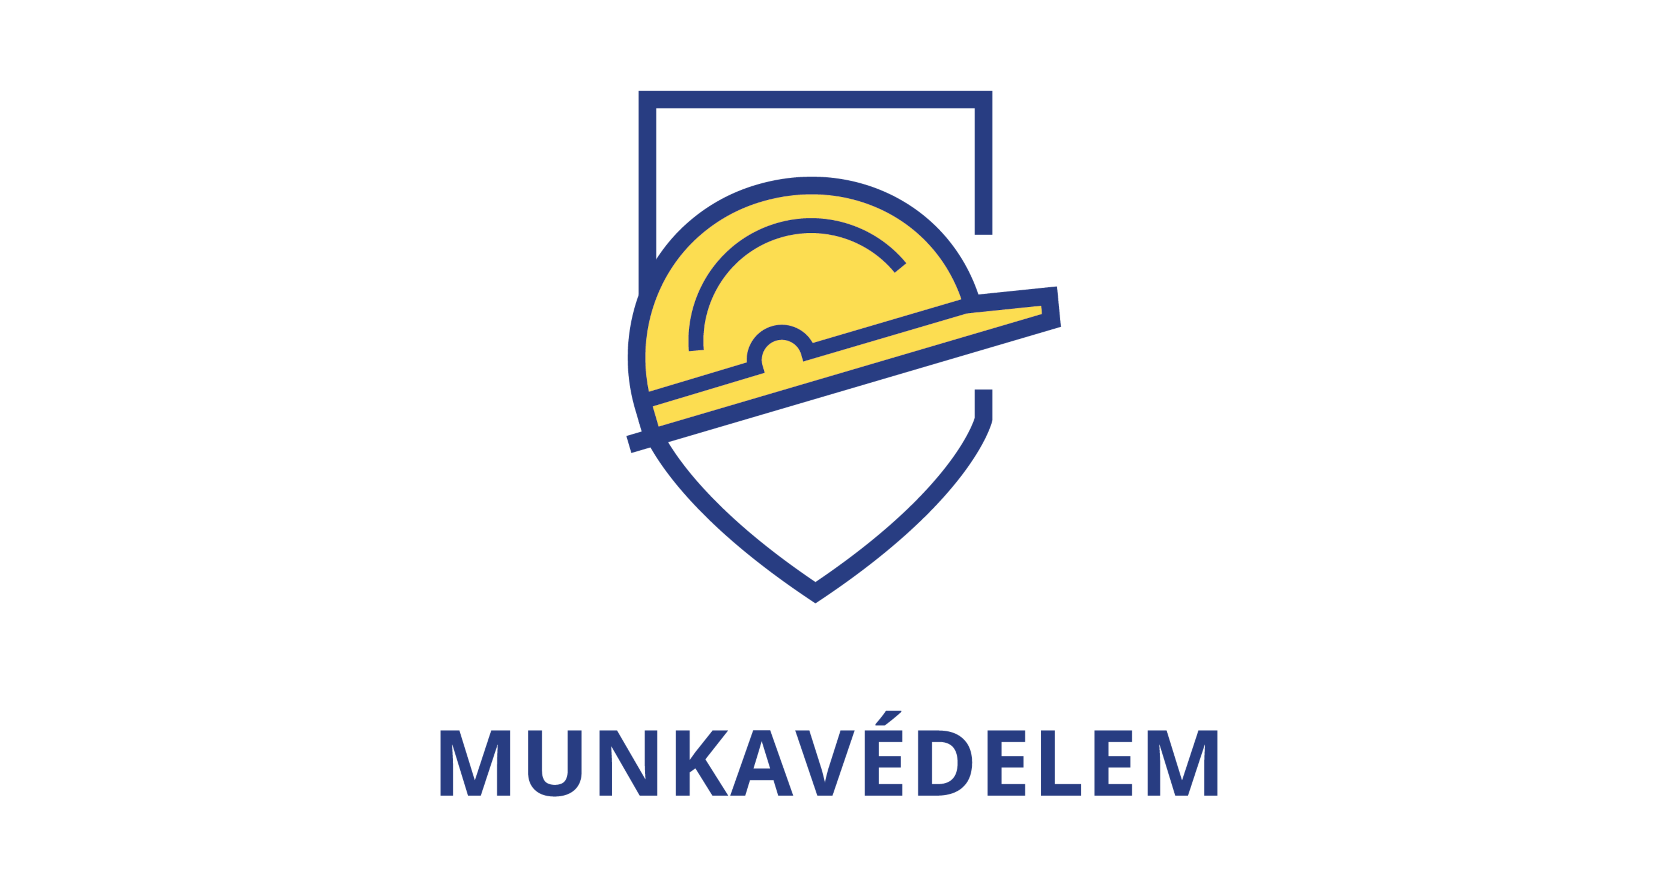 Munkavédelem logo